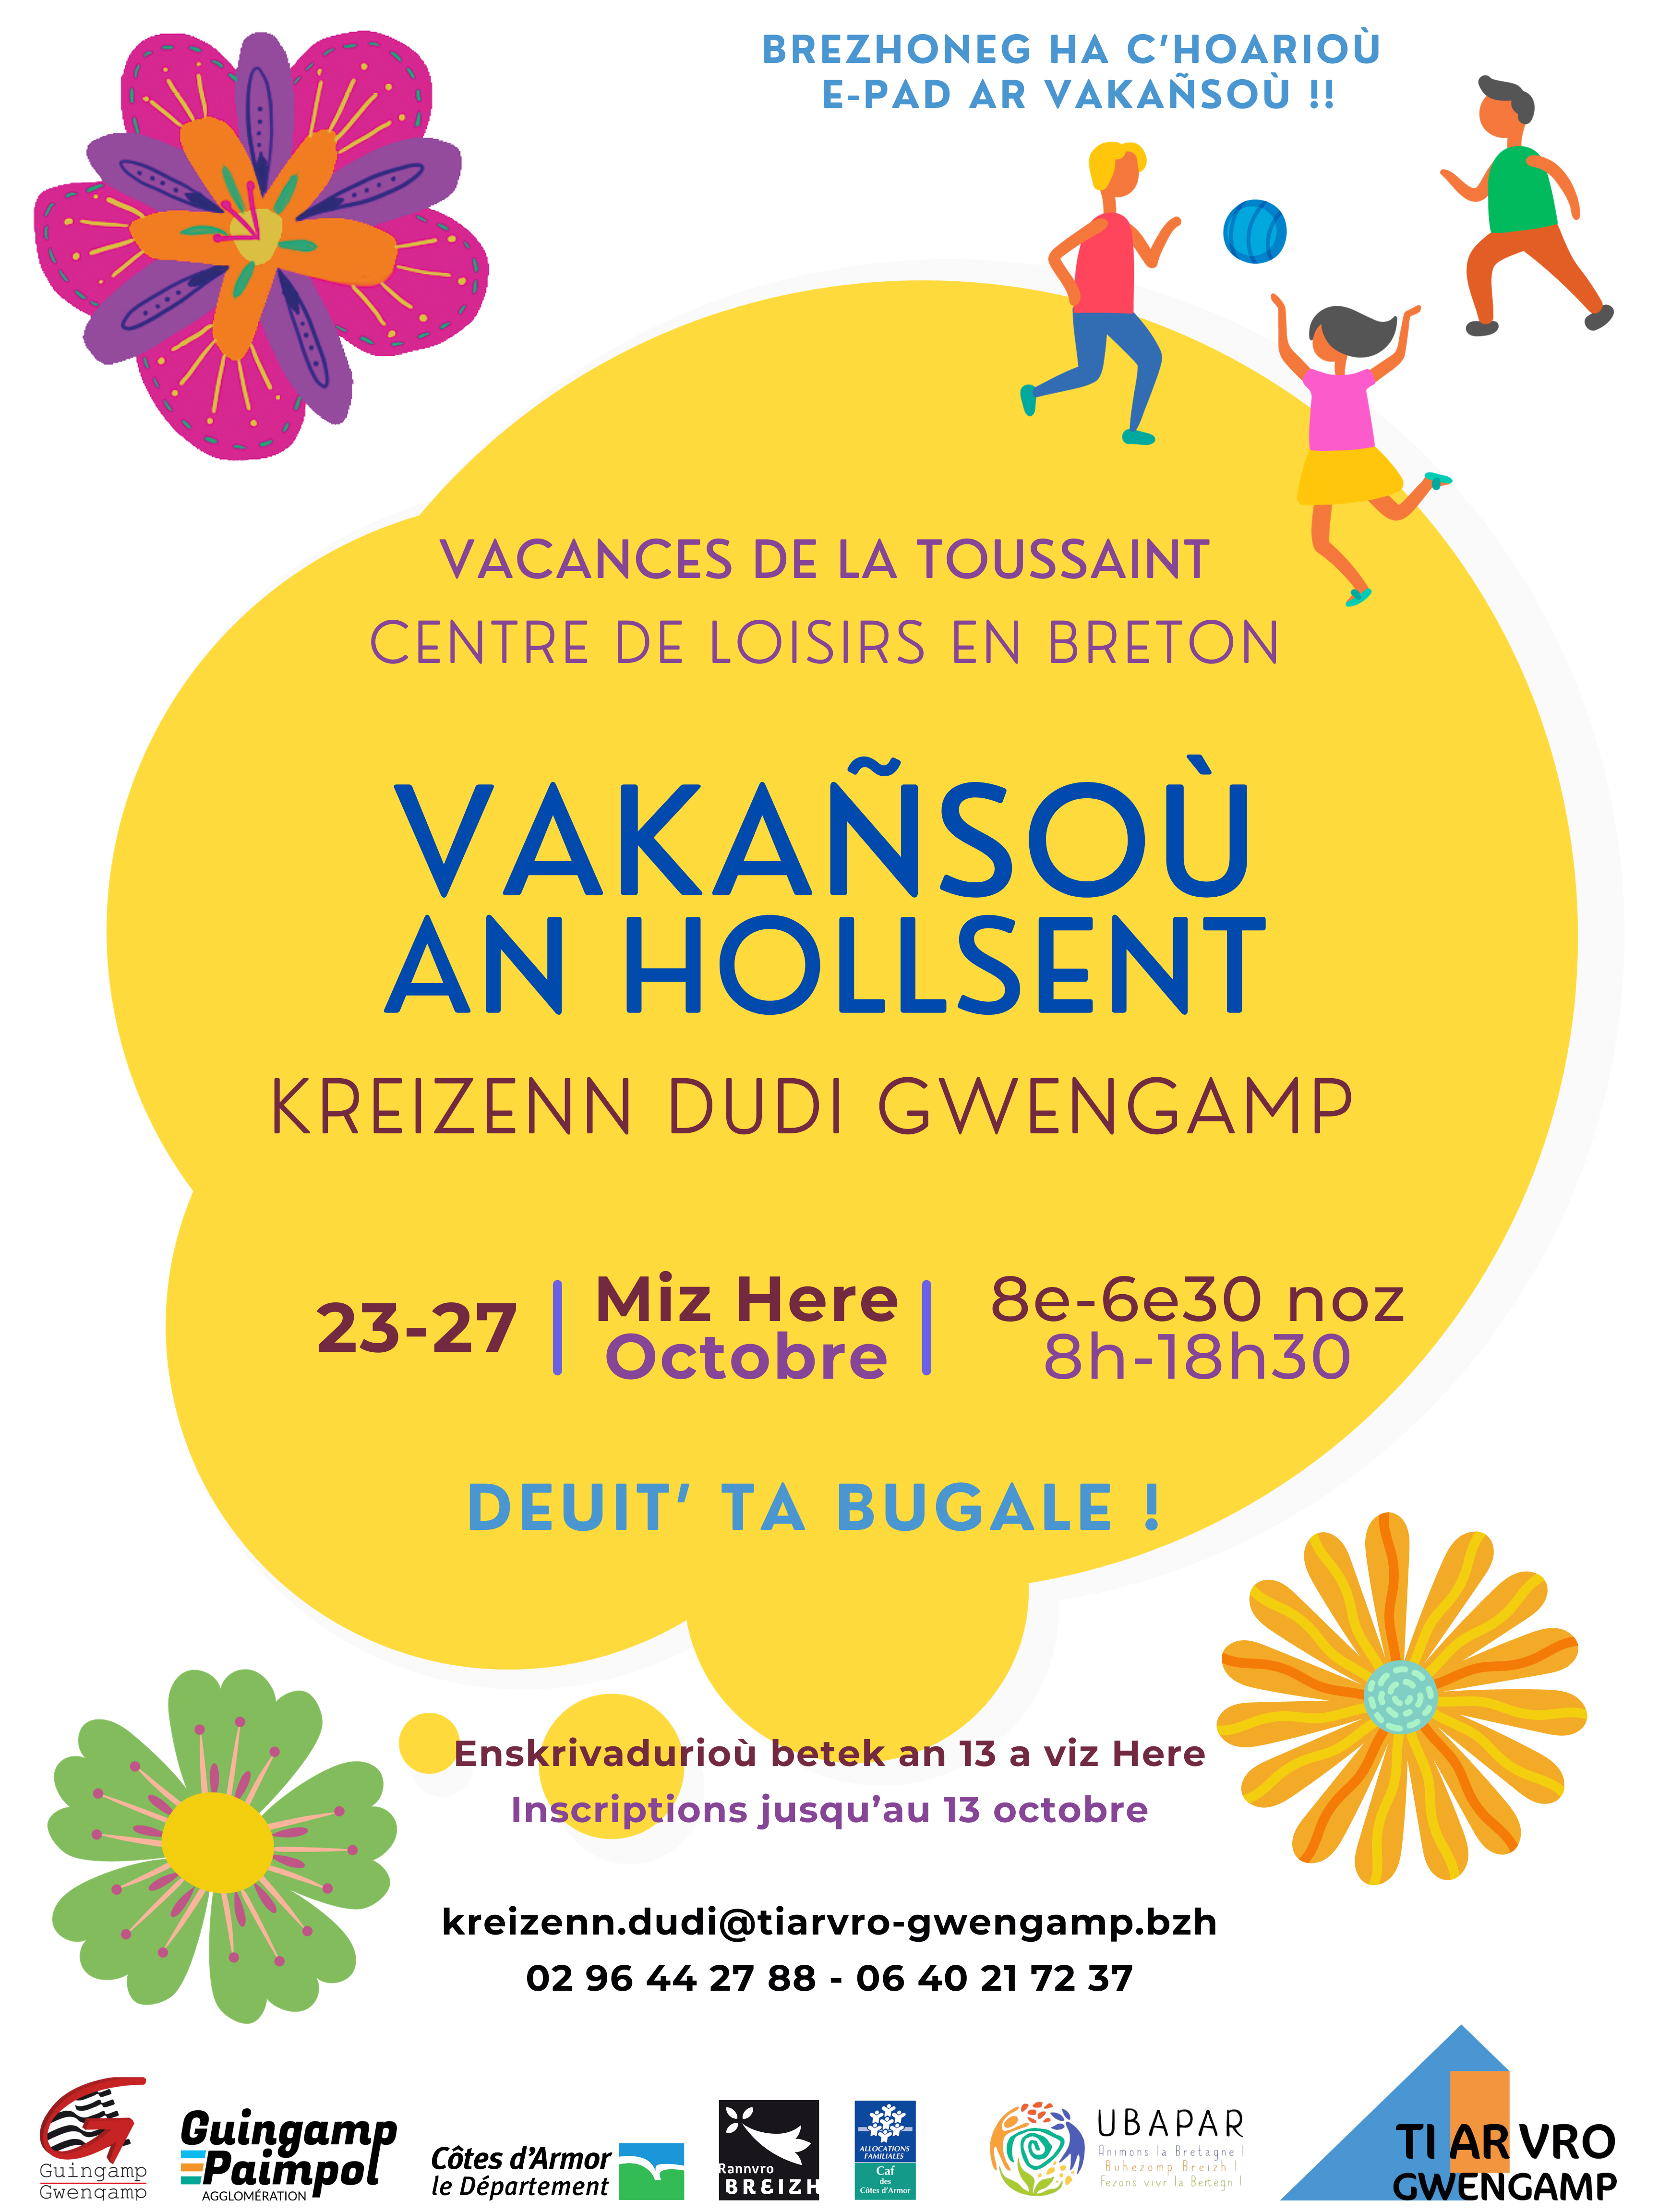 centre de loisirs en breton kreizenn dudi gwengamp vacances de la toussaint